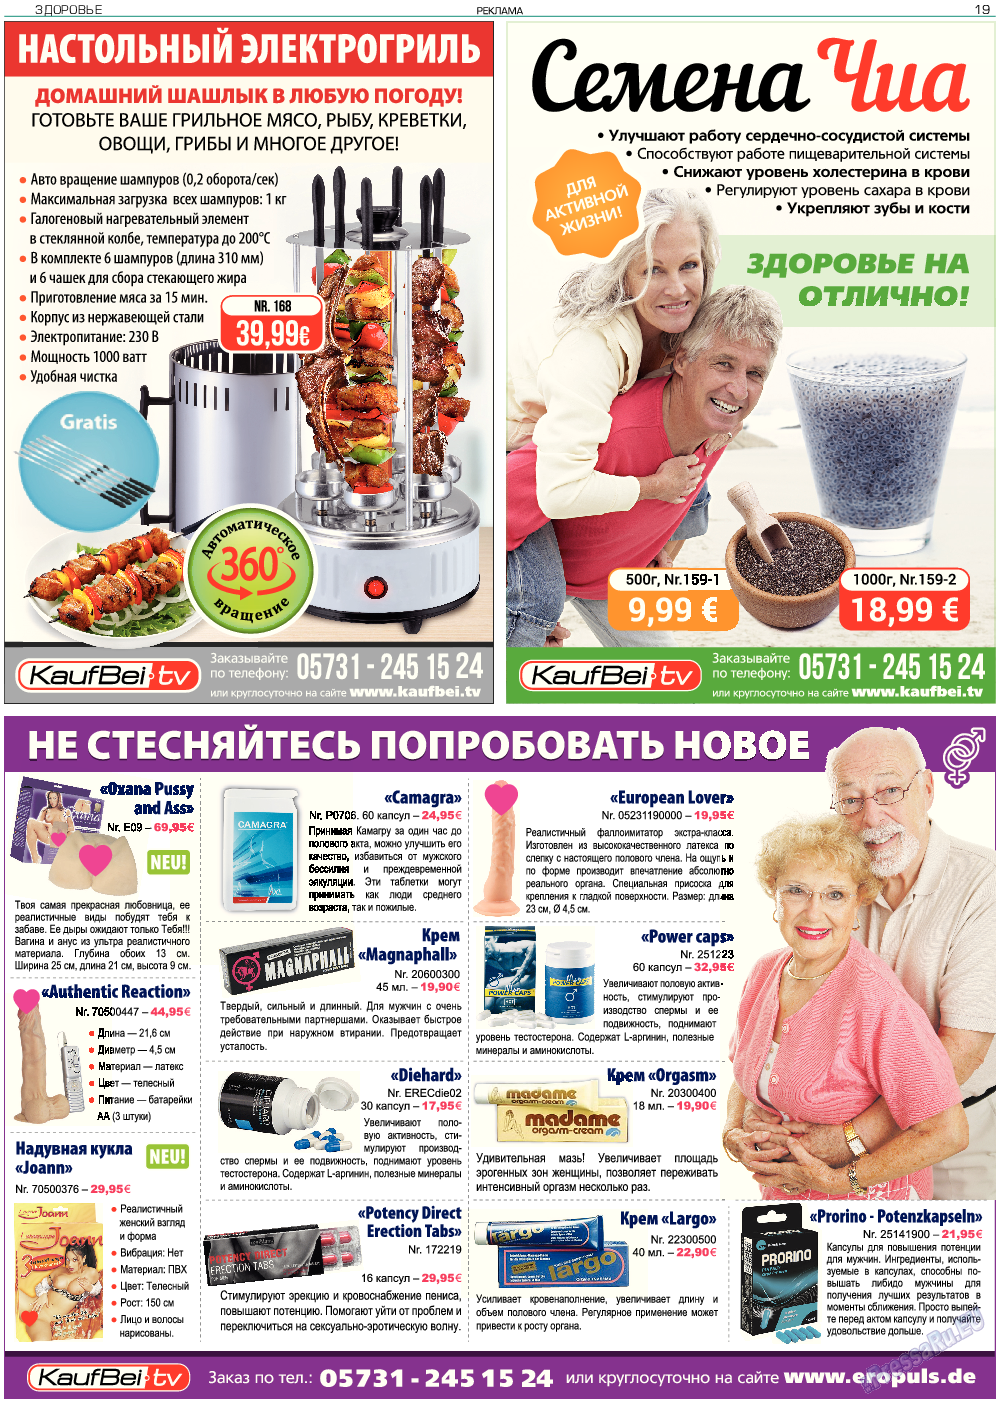 Здоровье, газета. 2017 №6 стр.19